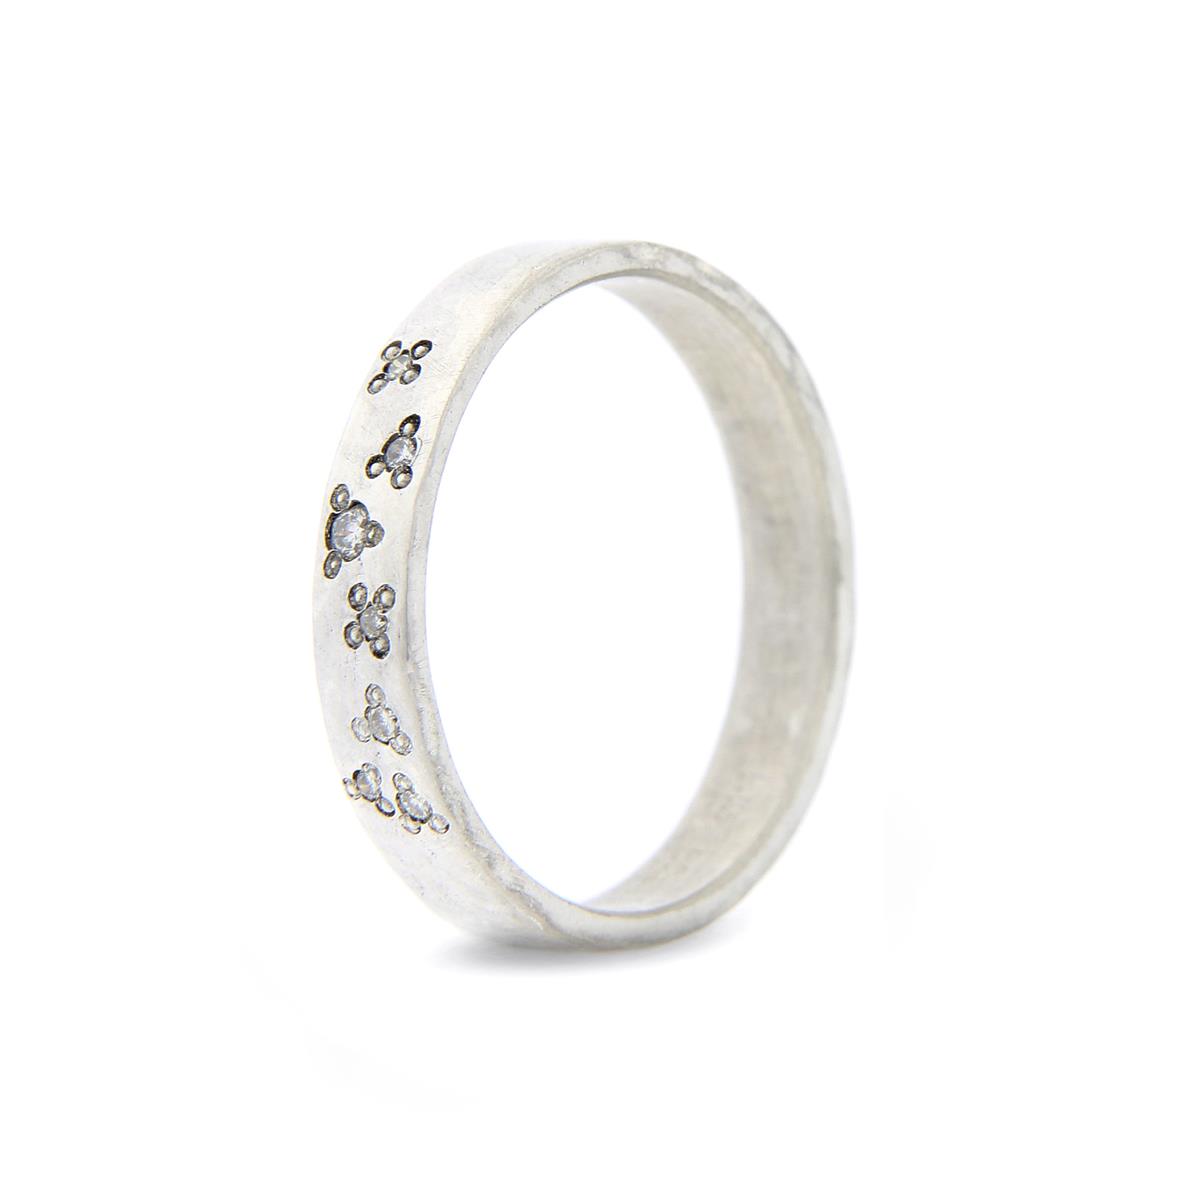 Katie g. Jewellery - Knuckle Ring Wide - sterling silber mit stargazing brillanten - Ring um 60€ und pro Brillant 70€ - Brillant Anzahl und Position kann vom Kunden bestimmt werden